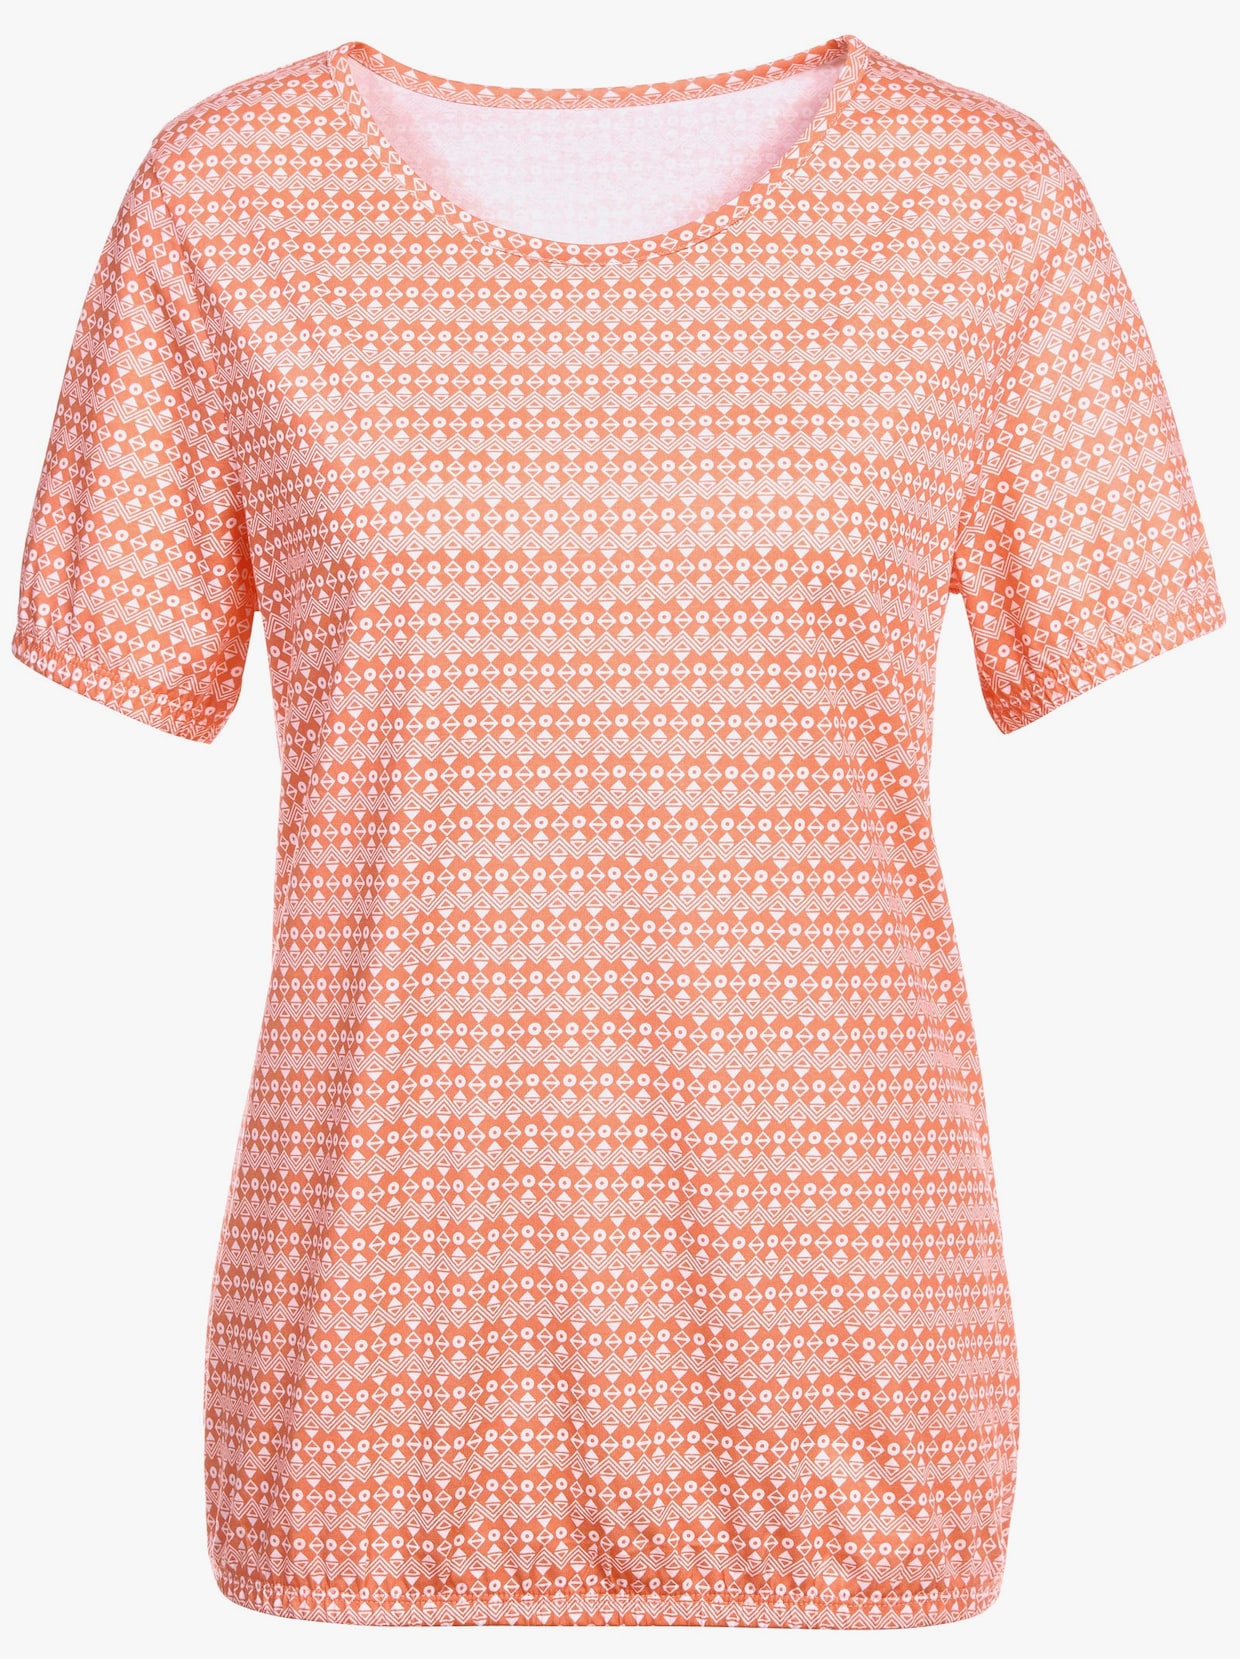 Print-Shirt - orange-gemustert